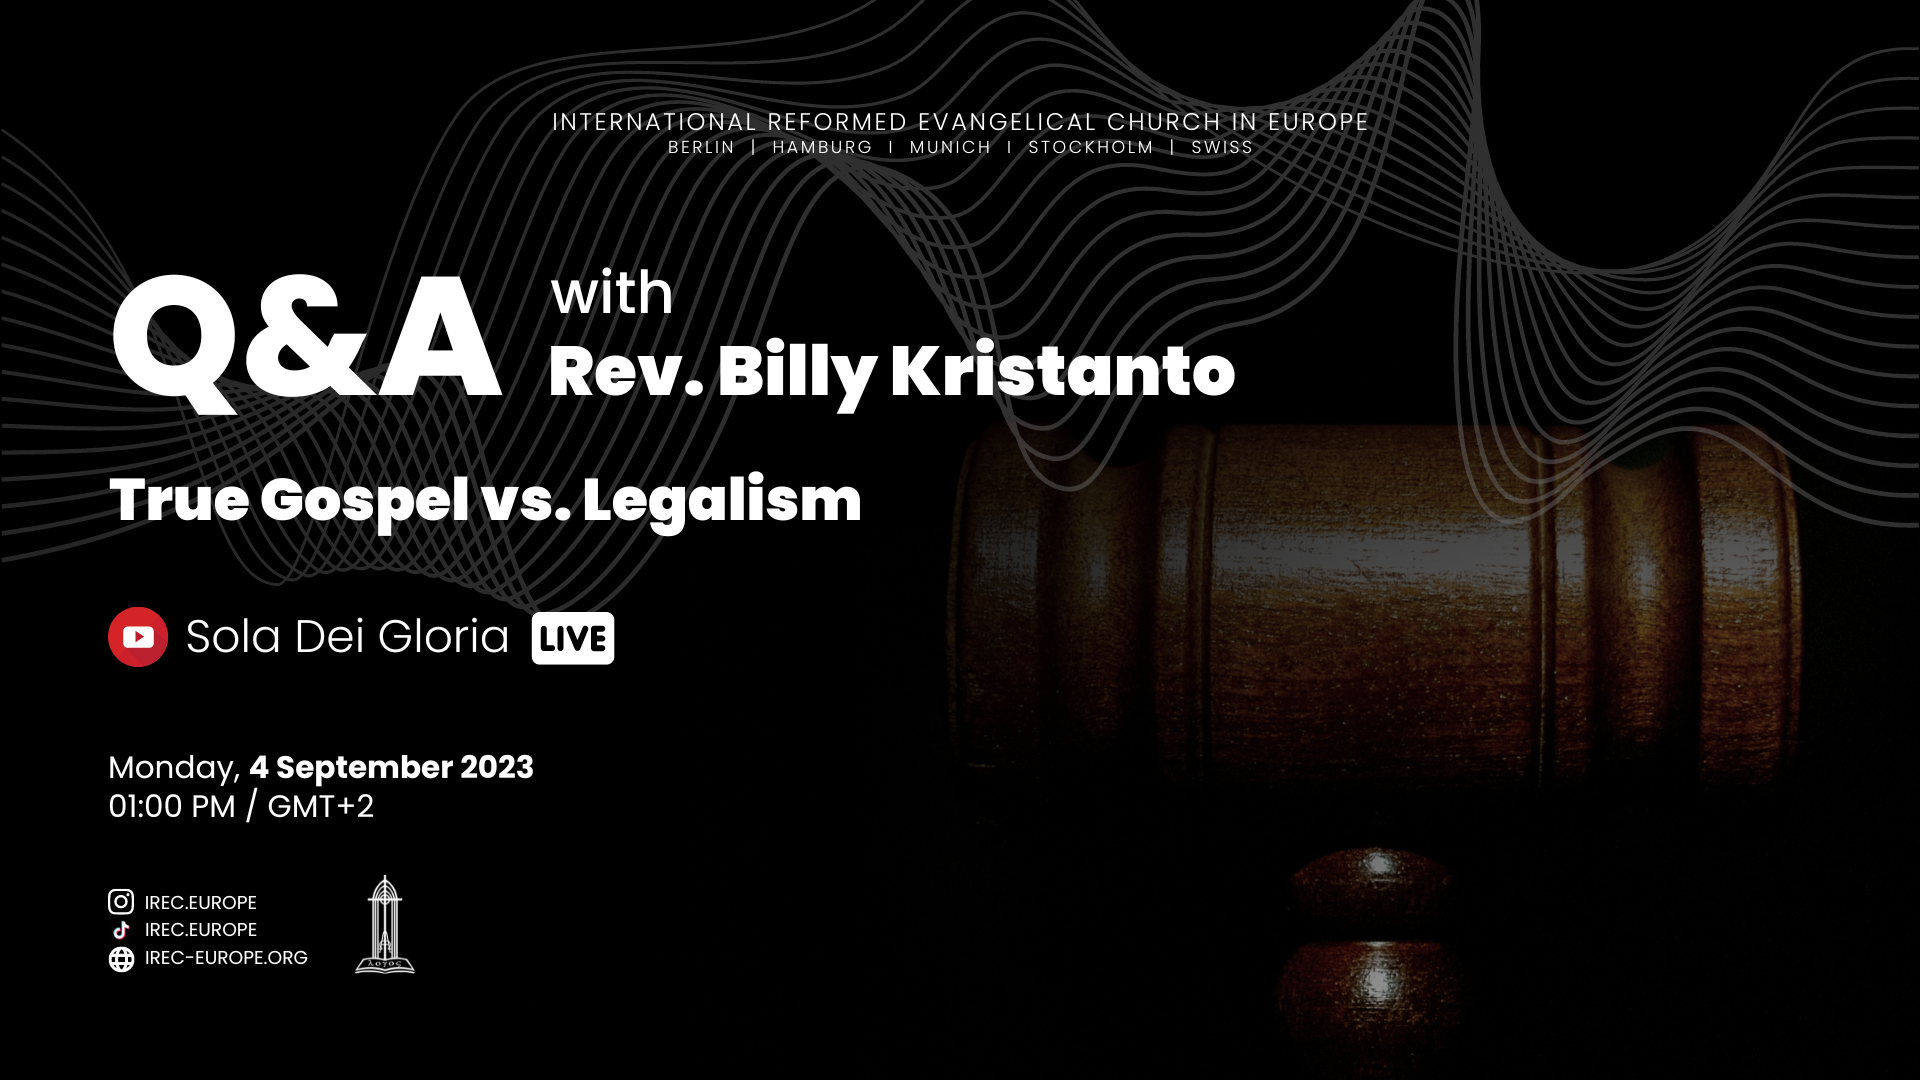 Q&A: True Gospel vs. Legalism